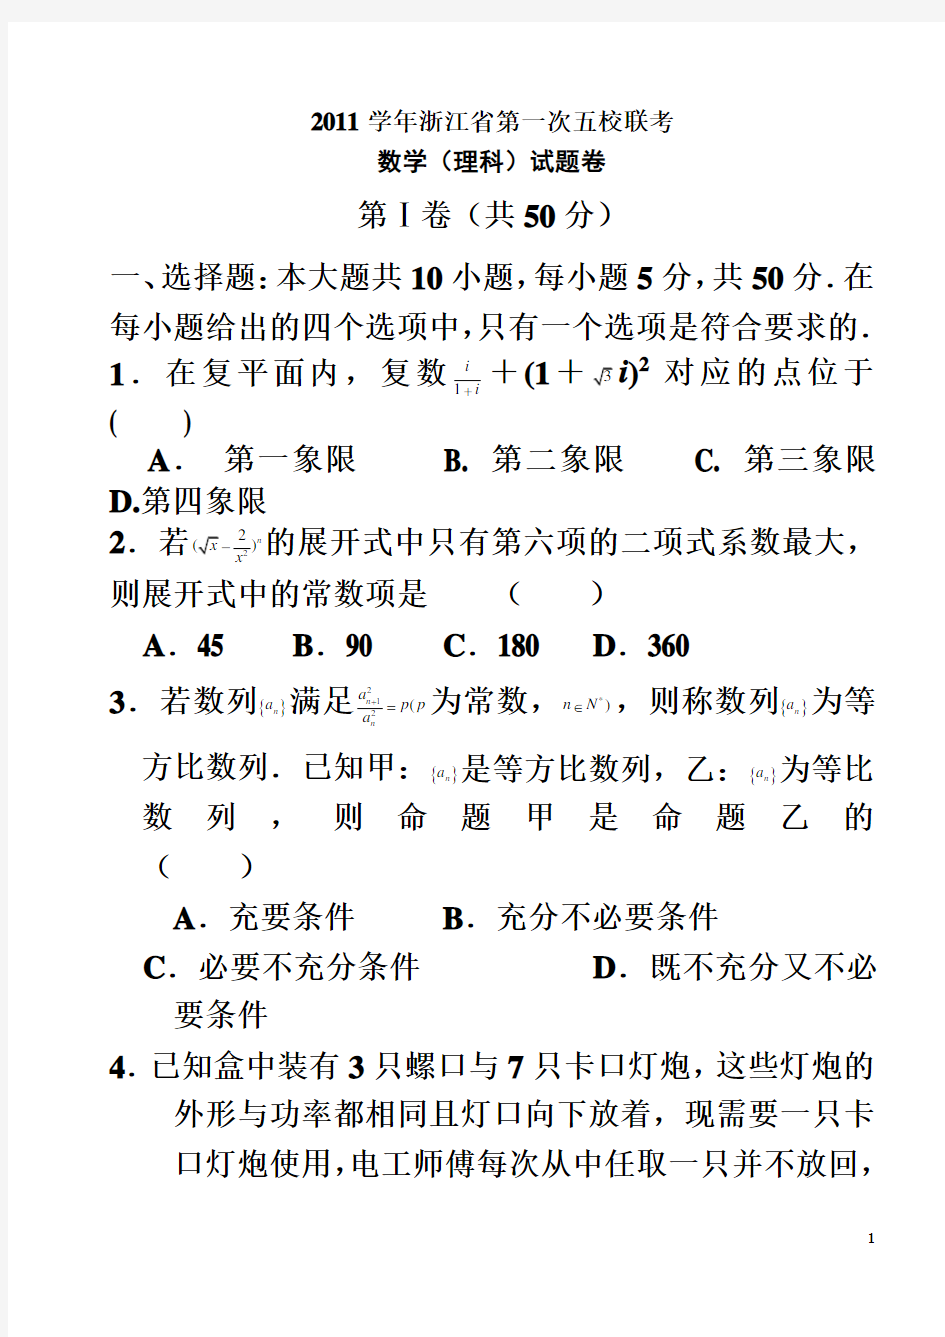 杭州学军中学高三理科数学第五校联考定5